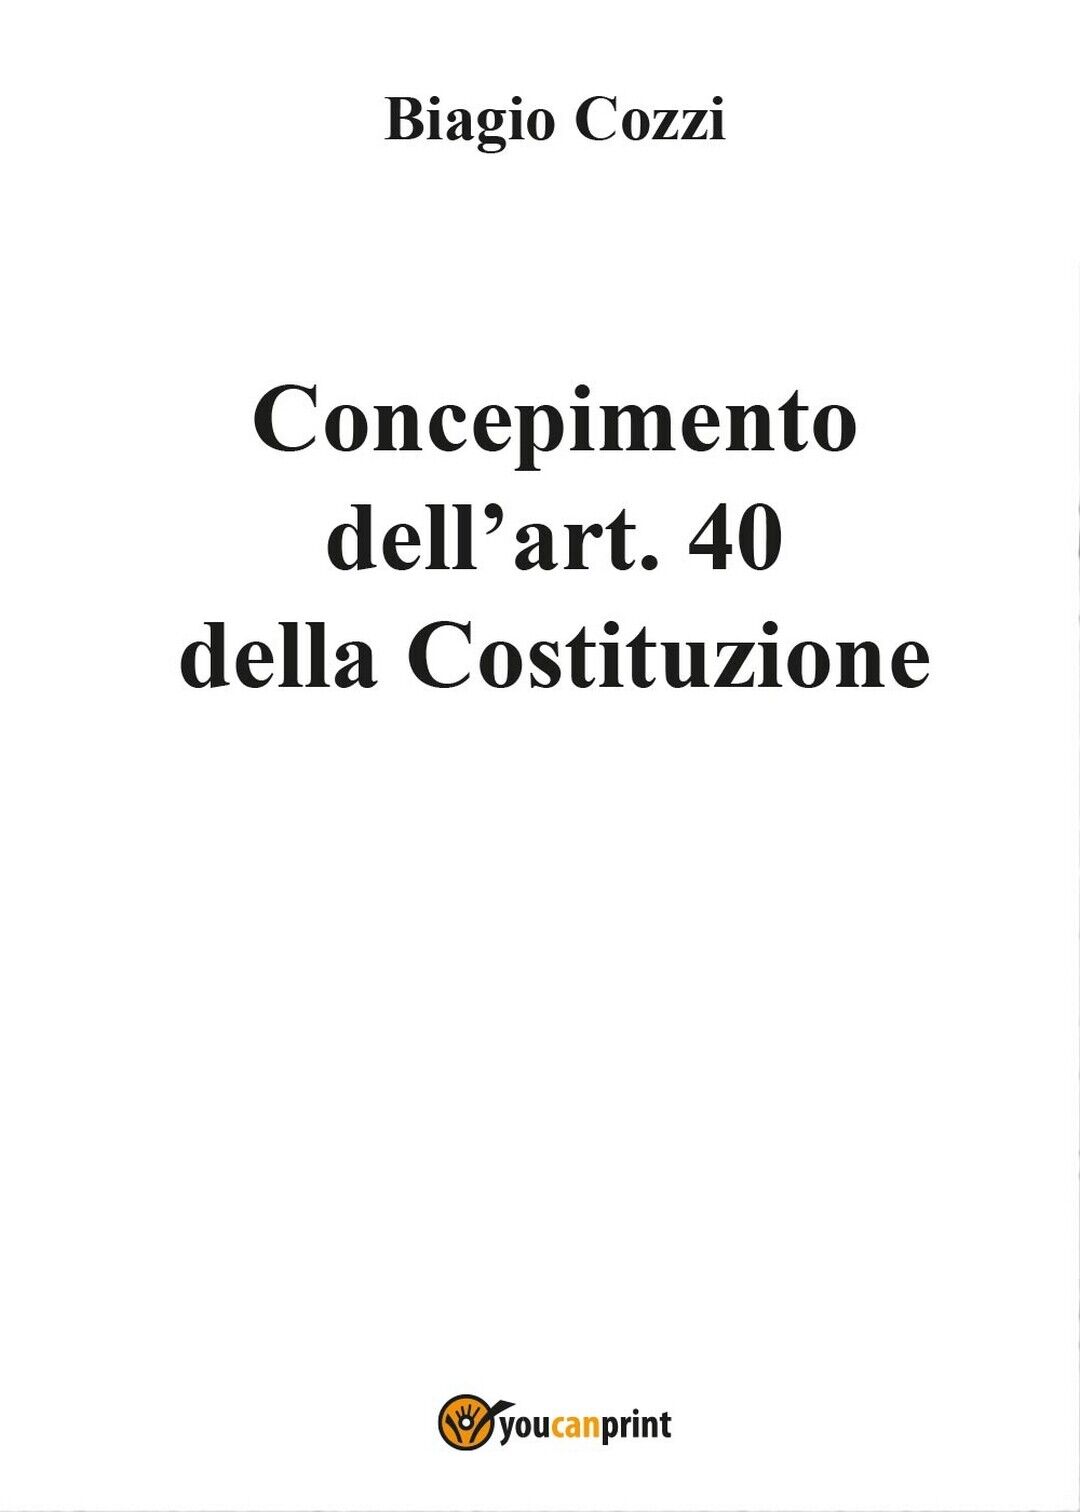 Concepimento delL'art. 40 della Costituzione, Biagio Cozzi,  2017,  Youcanprint libro usato